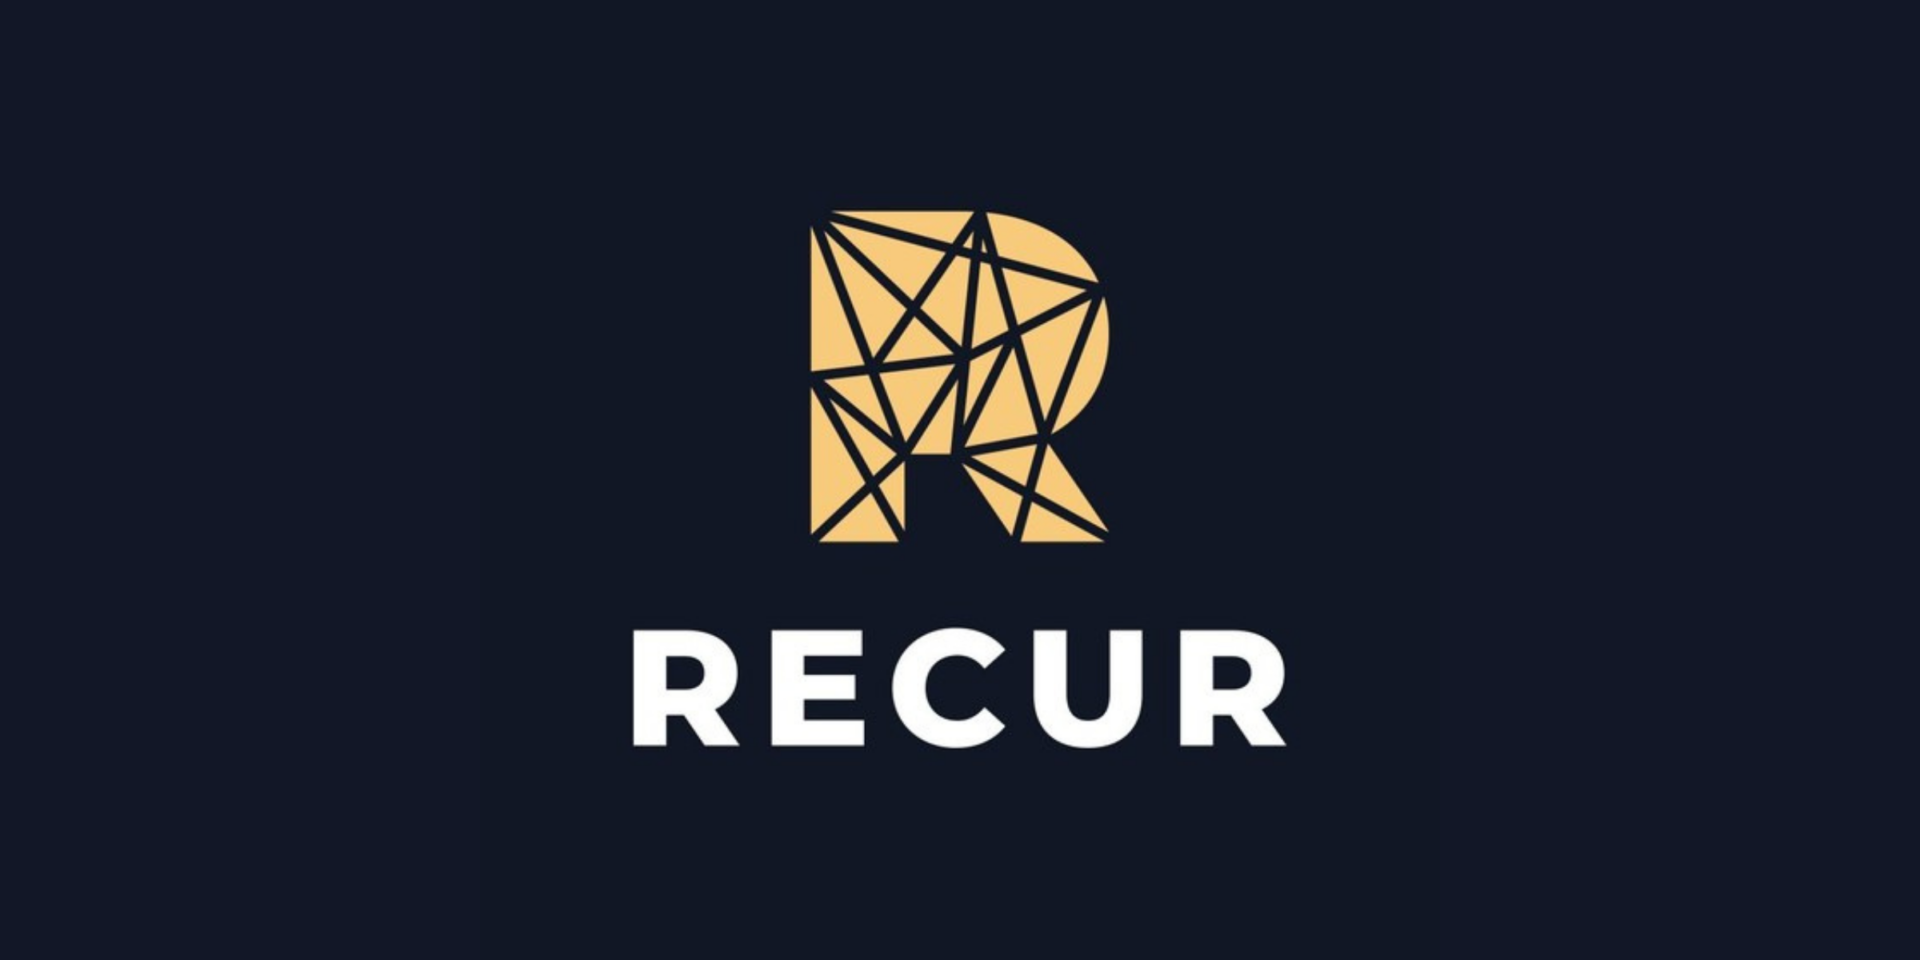 RECUR Announces $50M Series A Raise at $333M Valuation